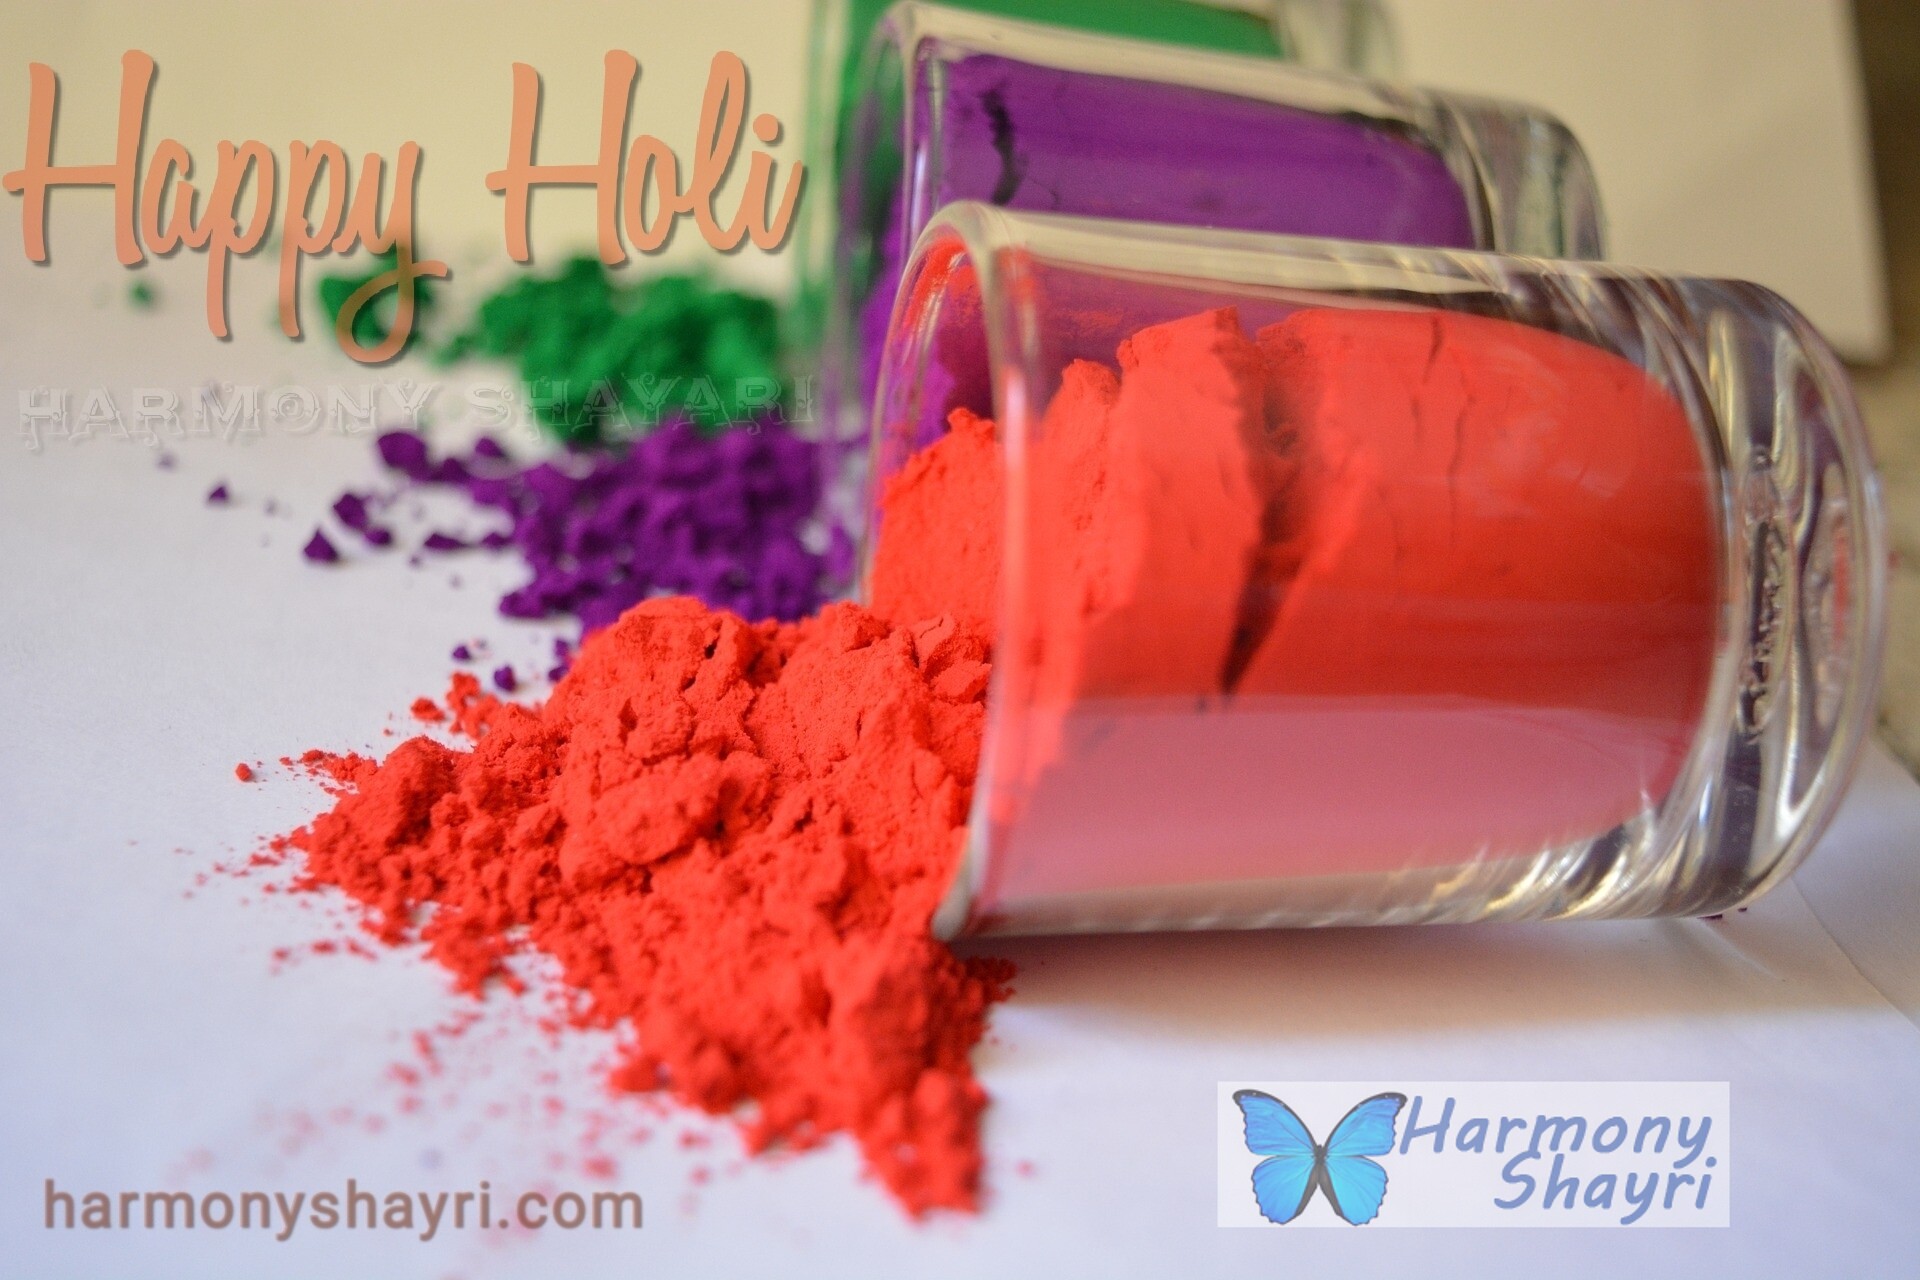 Happy Holi – Harmony Shayari